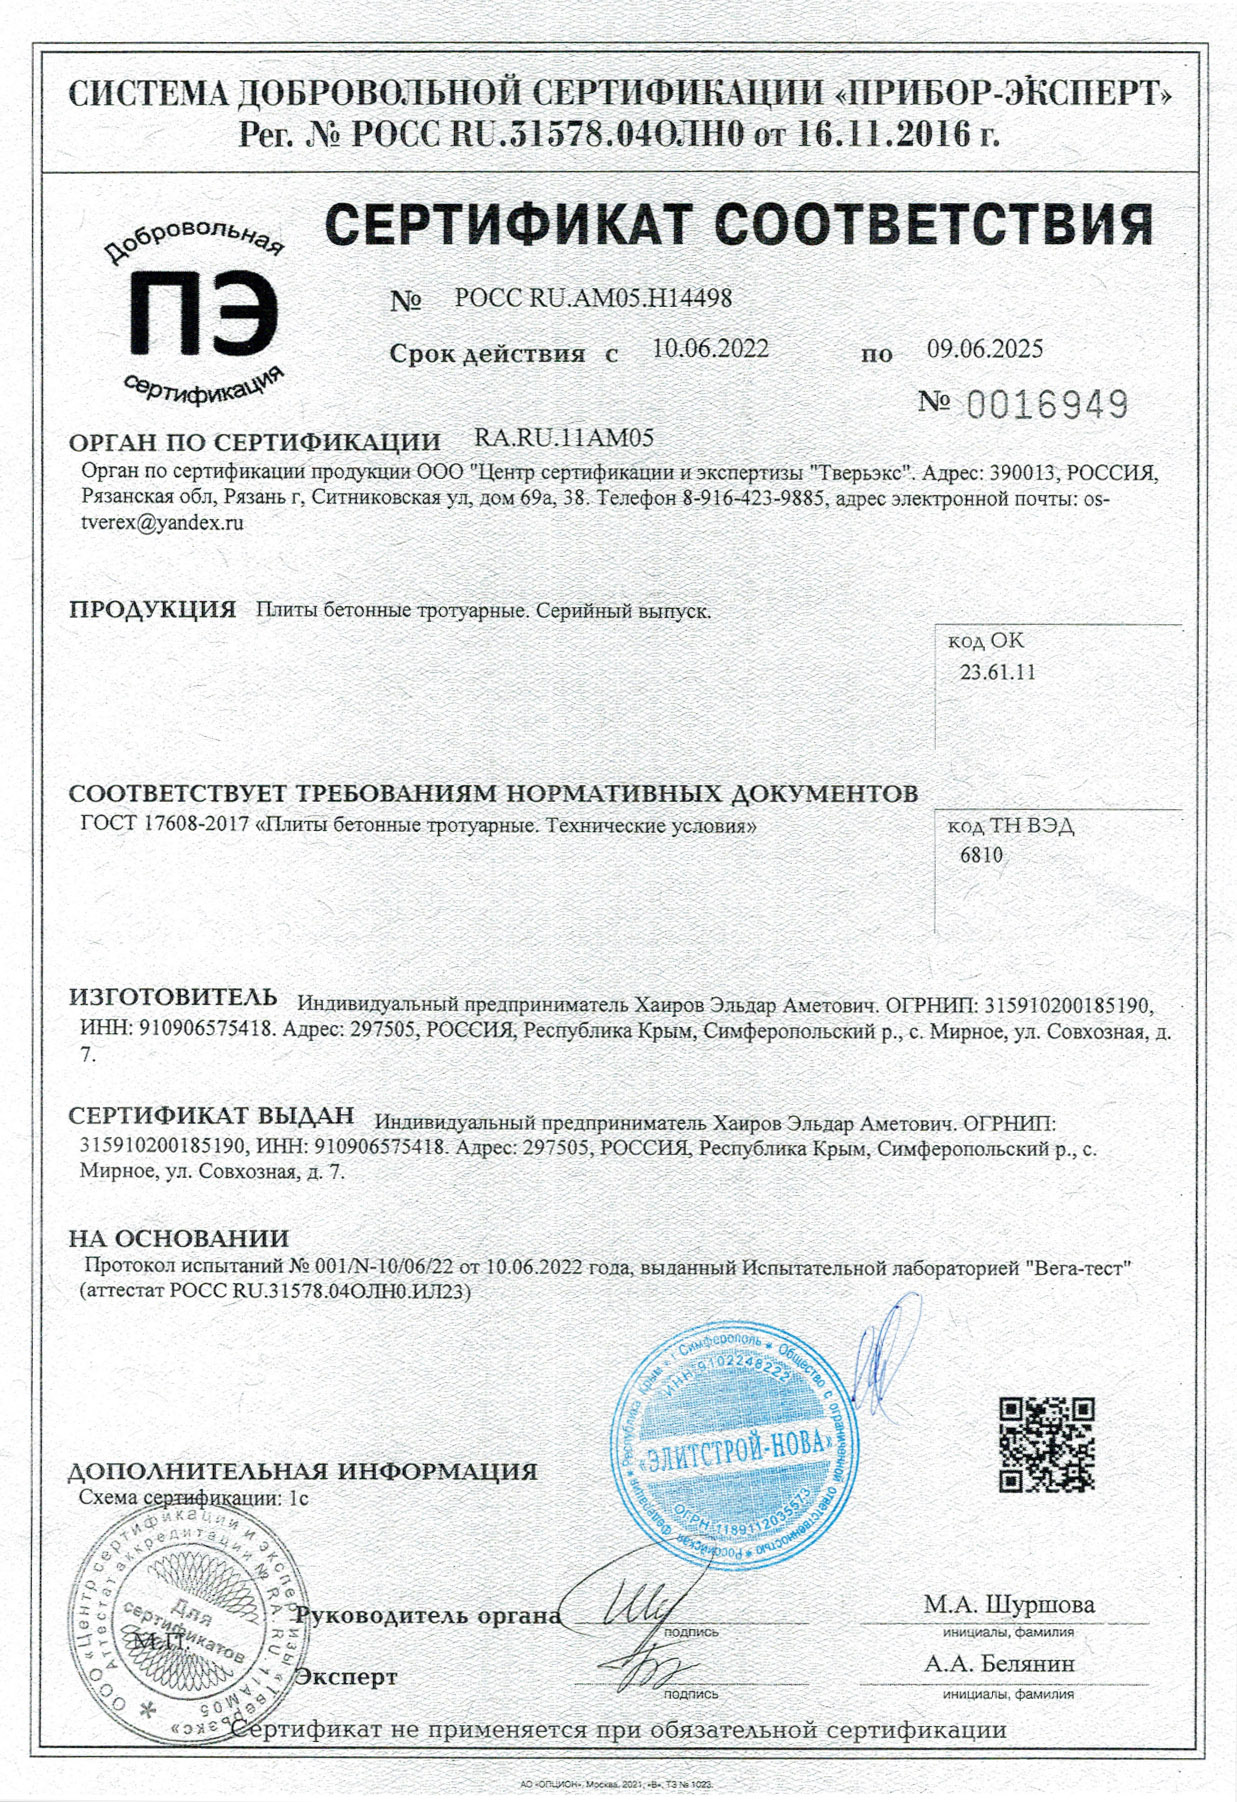 Сертификат на плитку компании Интер Брук, Симферополь